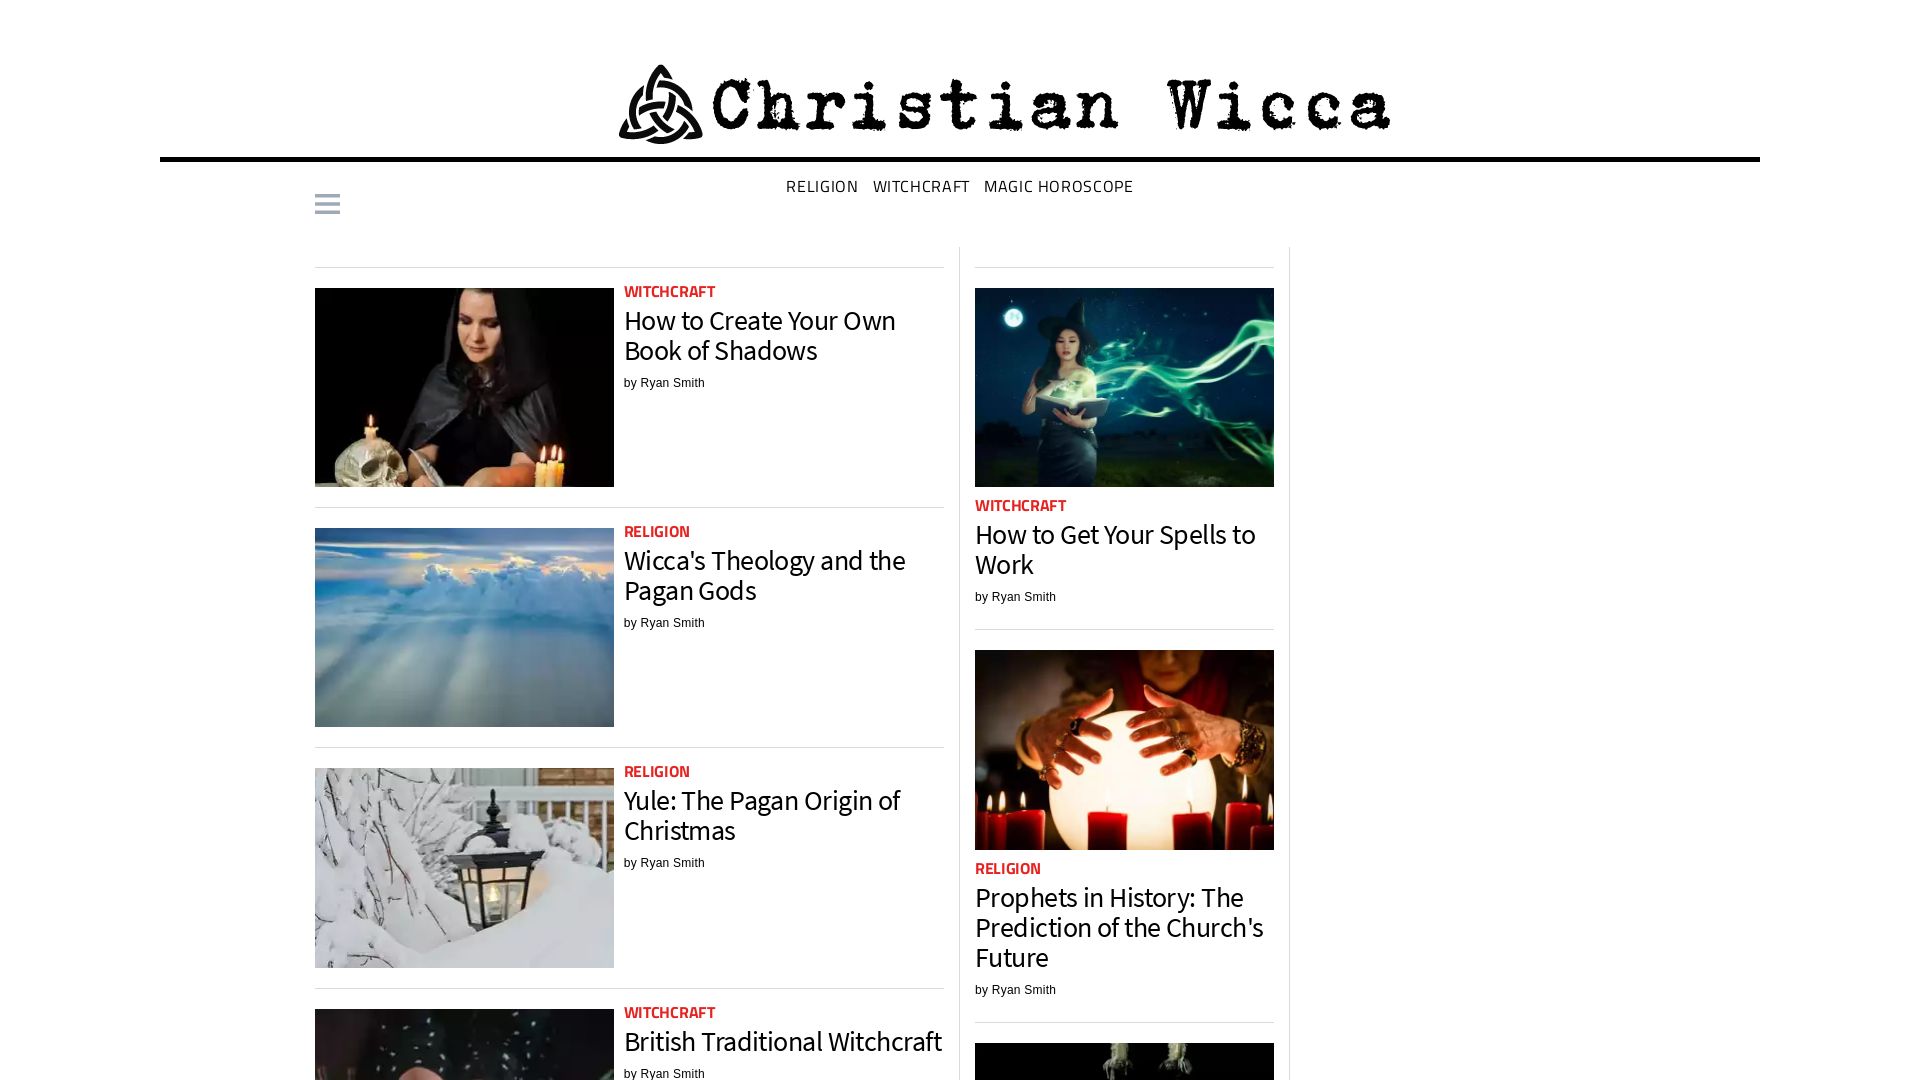 网站状态 christianwicca.org 是  在线的